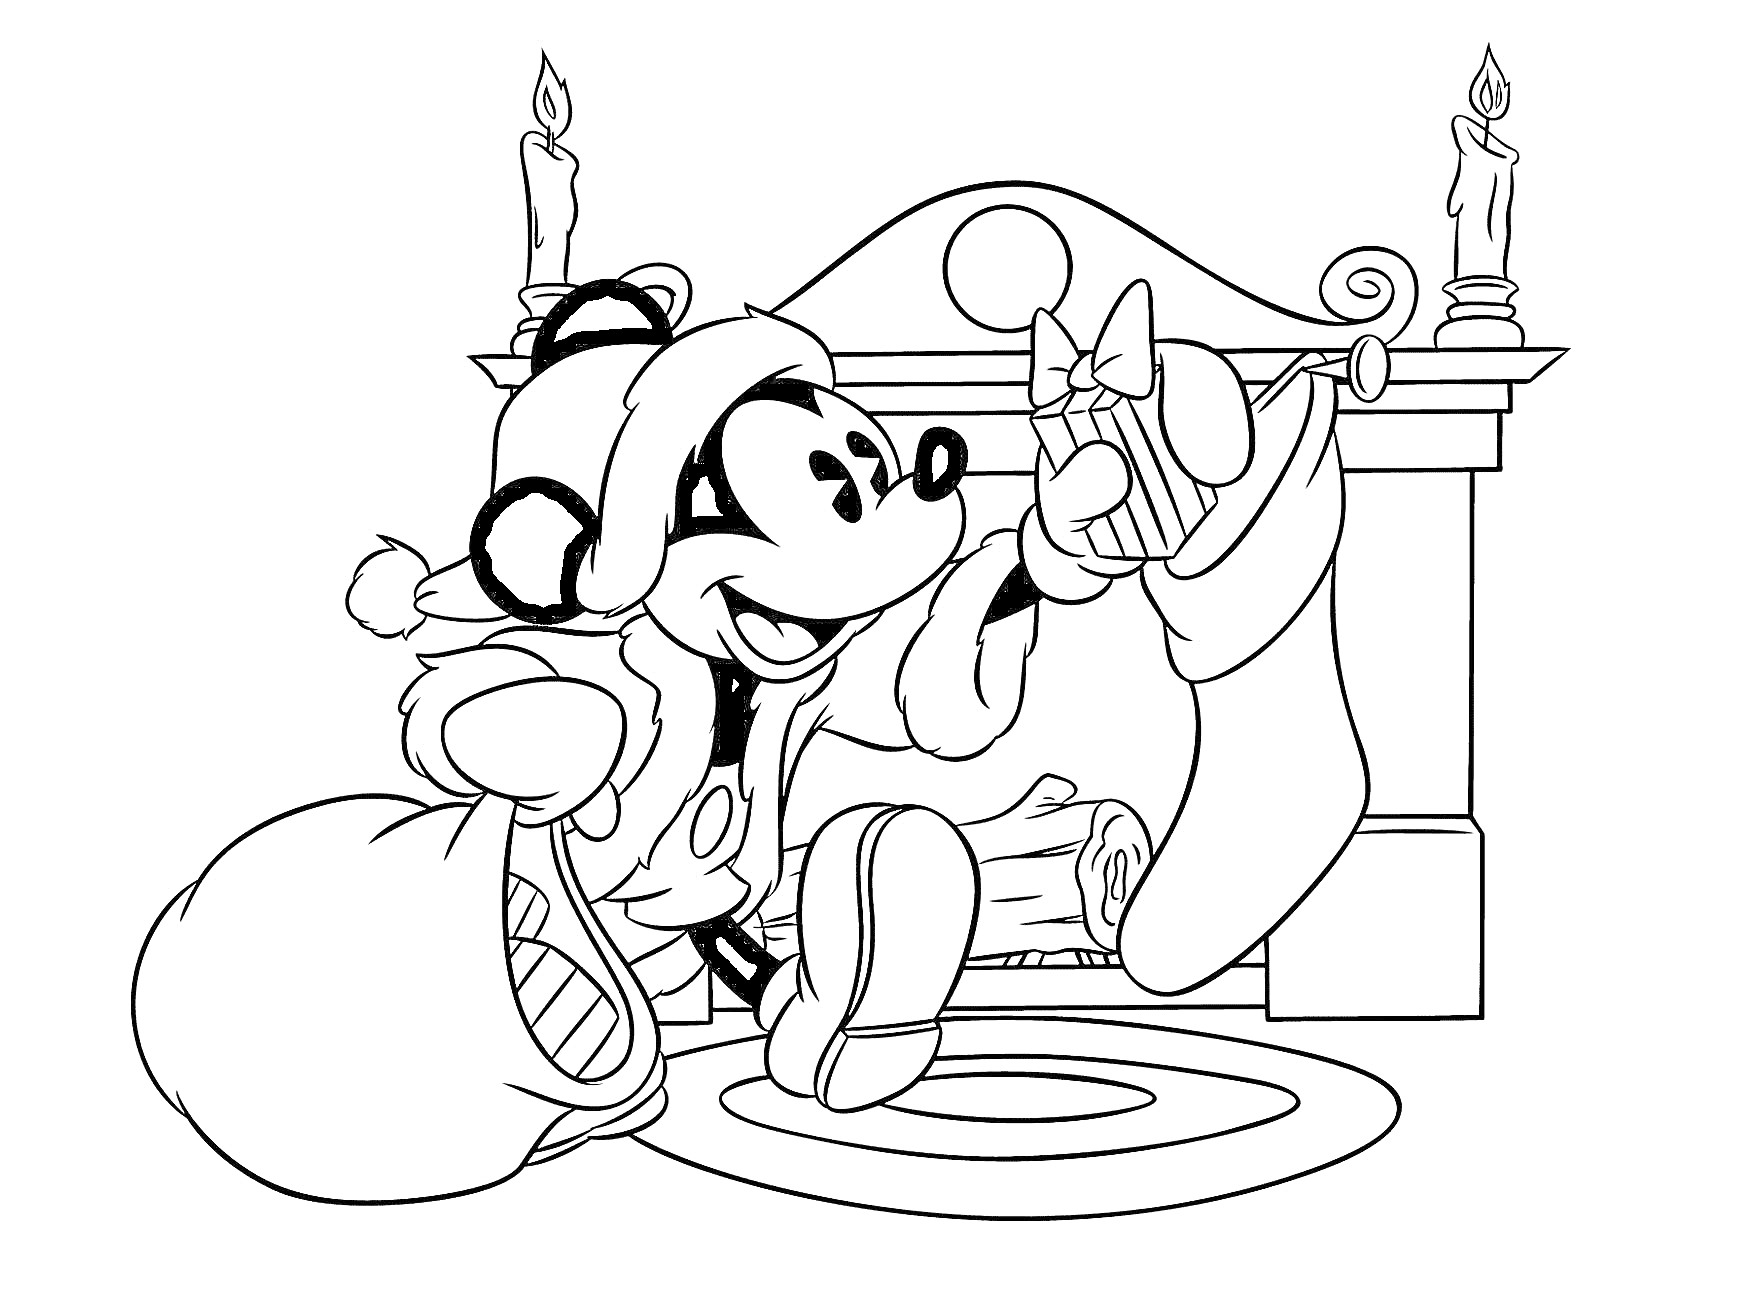 Микки Маус в новогоднем костюме развешивает новогодние носки у камина, рядом лежит мешок с подарками, на камине стоят две горящие свечи